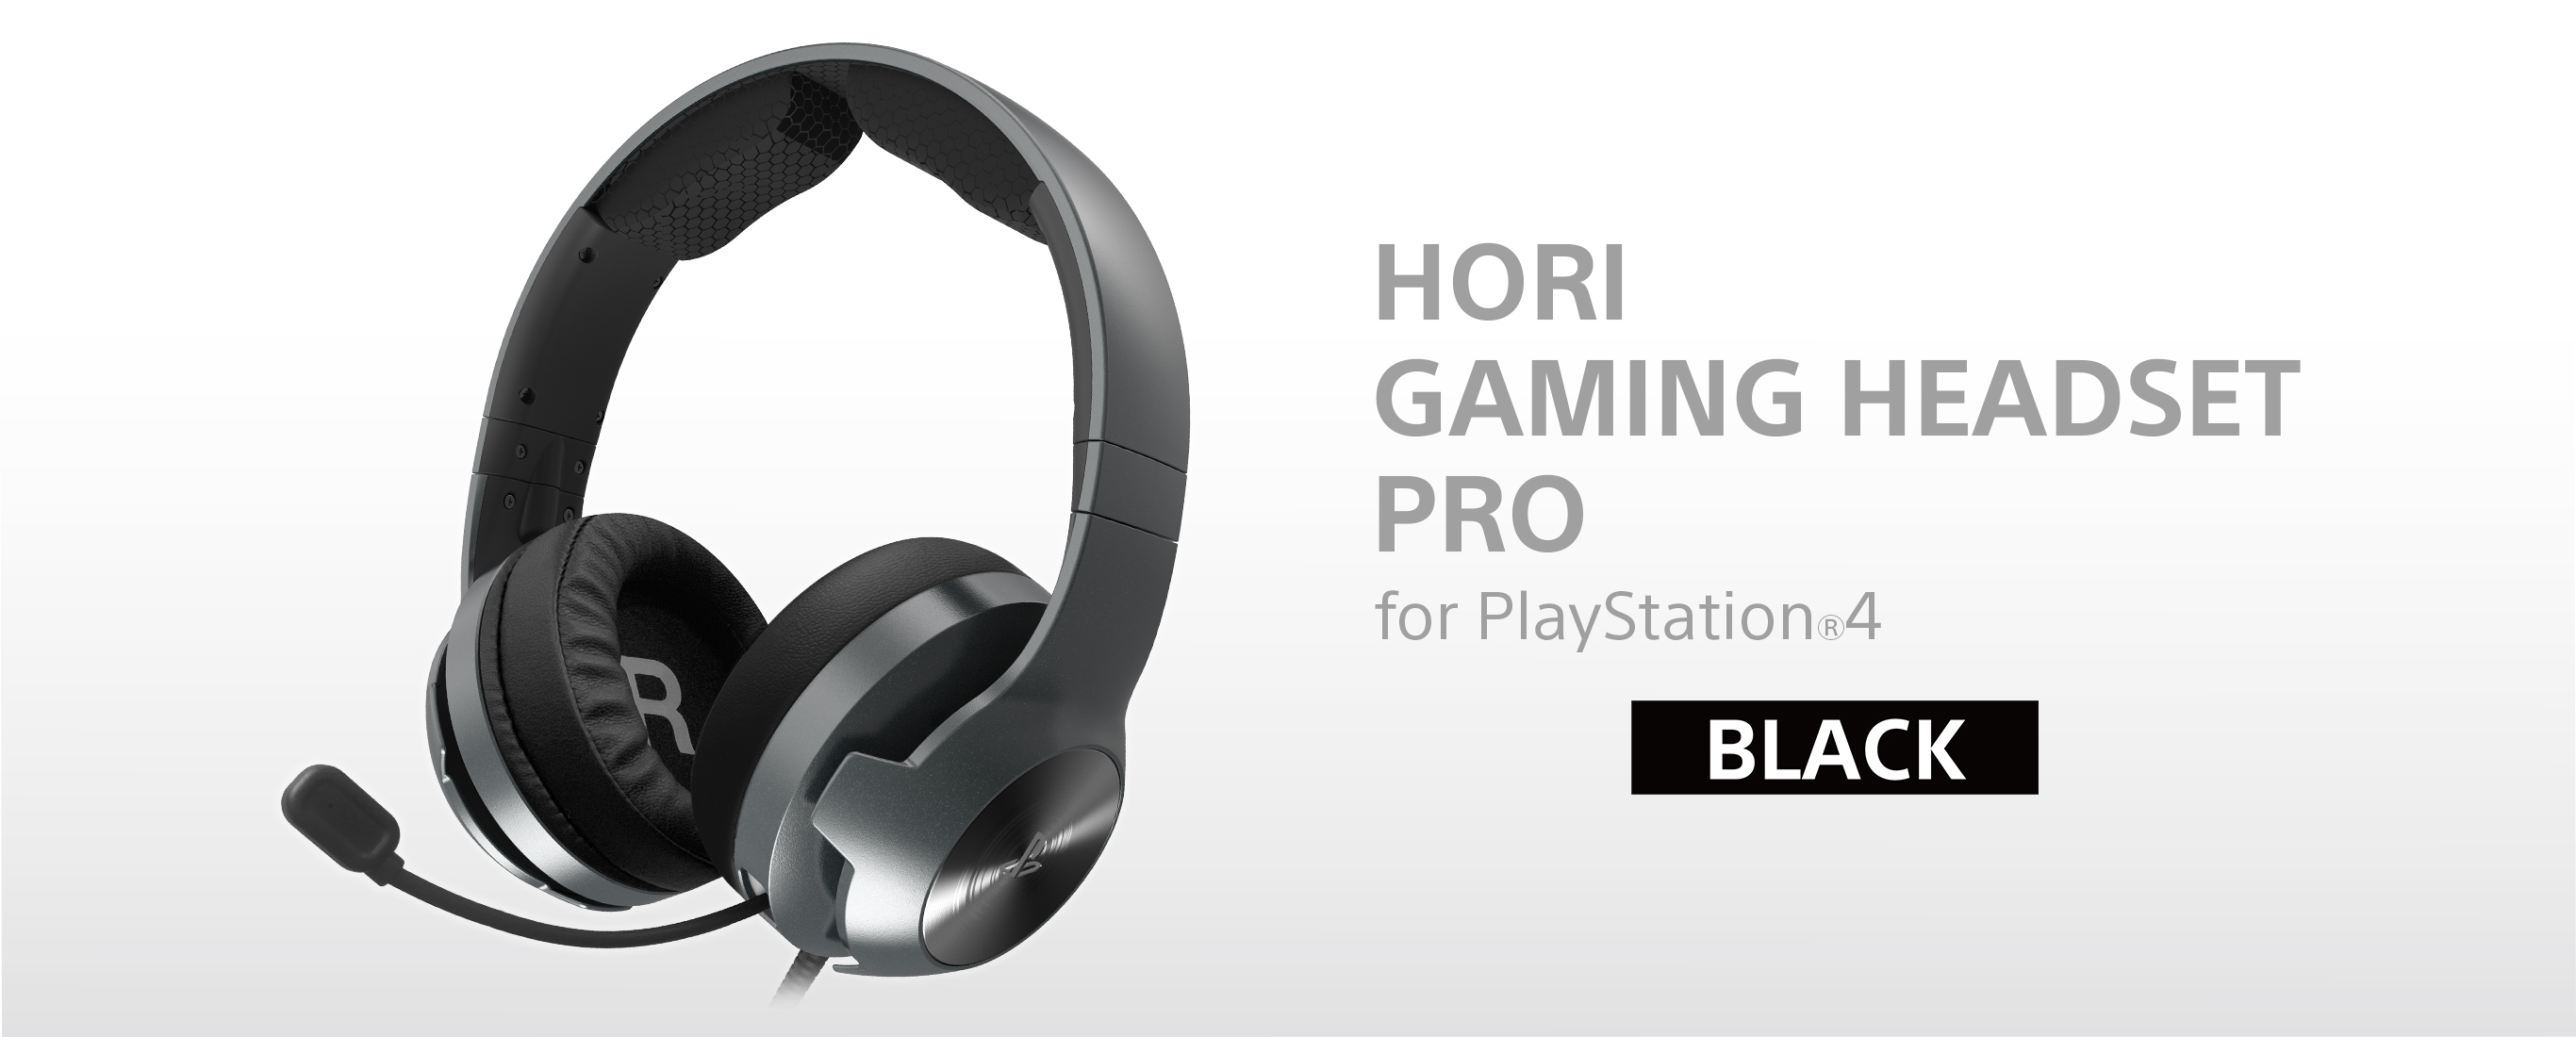 株式会社 HORI | ホリゲーミングヘッドセット プロ for PlayStation®4 ブラック